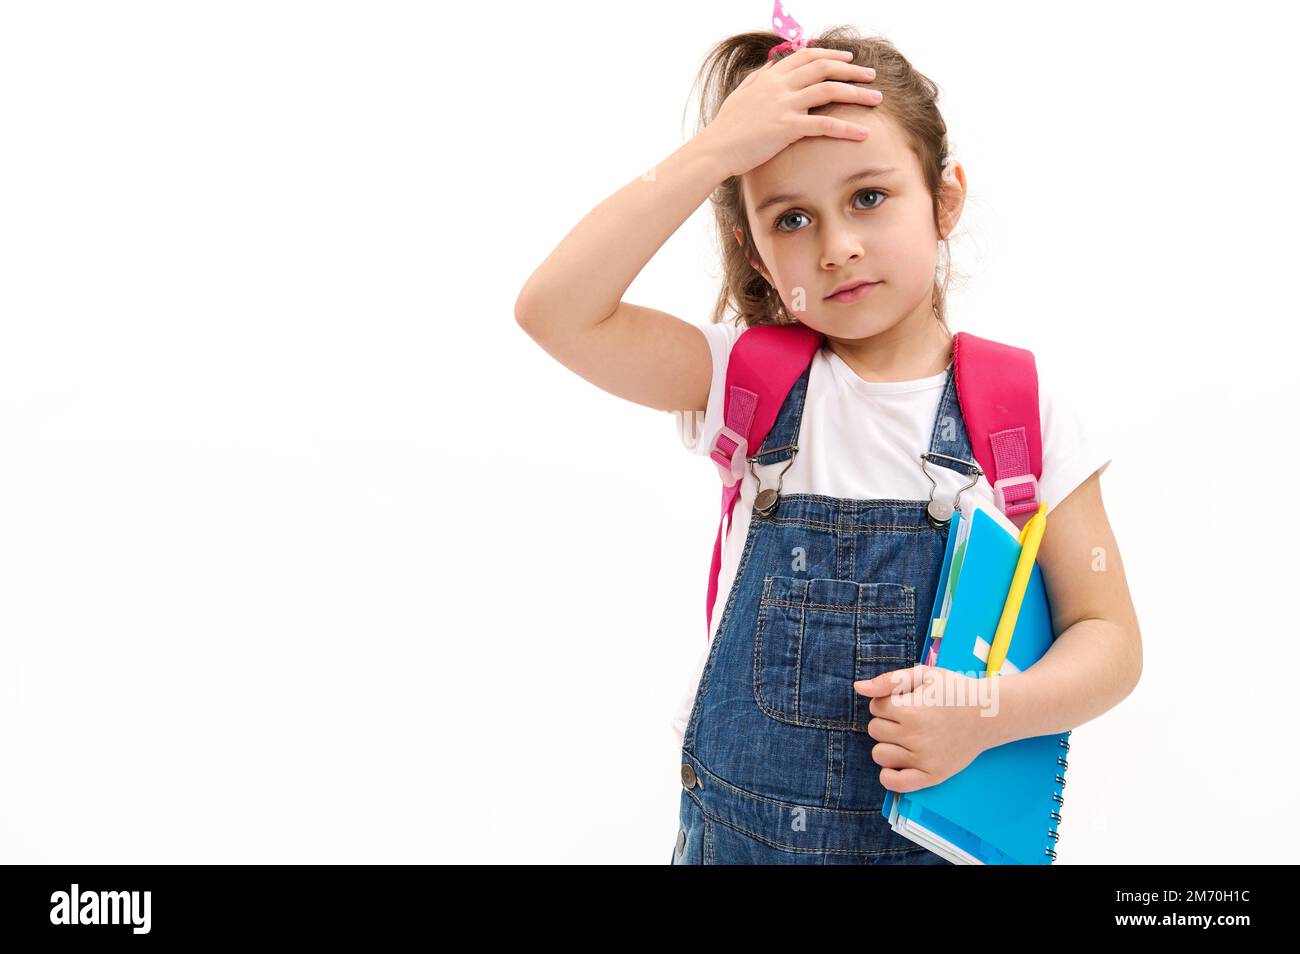 Grundschüler, niedliches kleines Mädchen, das Hand auf die Stirn legt, mit pinkfarbenem Rucksack und Copybook auf Weiß posiert Stockfoto